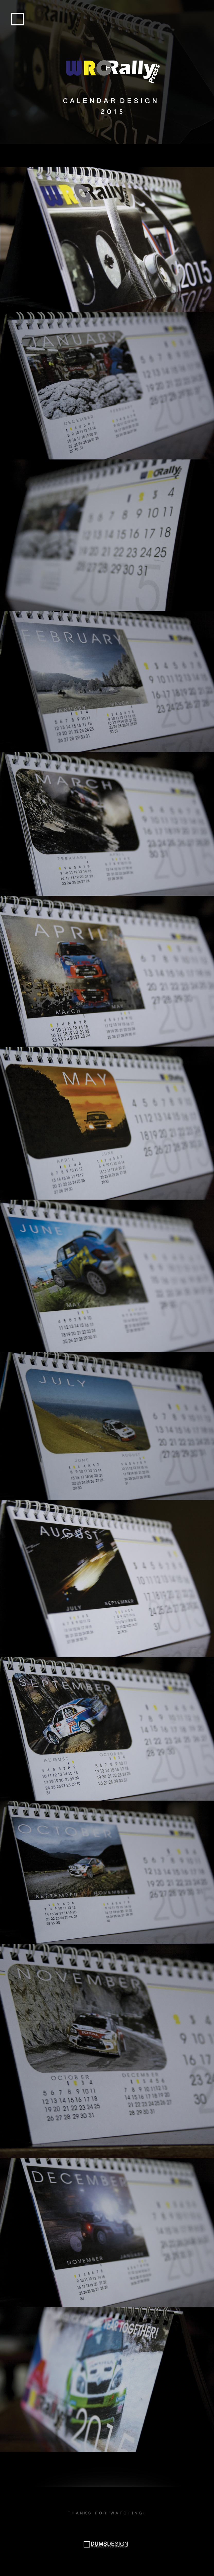 calendar design graphic